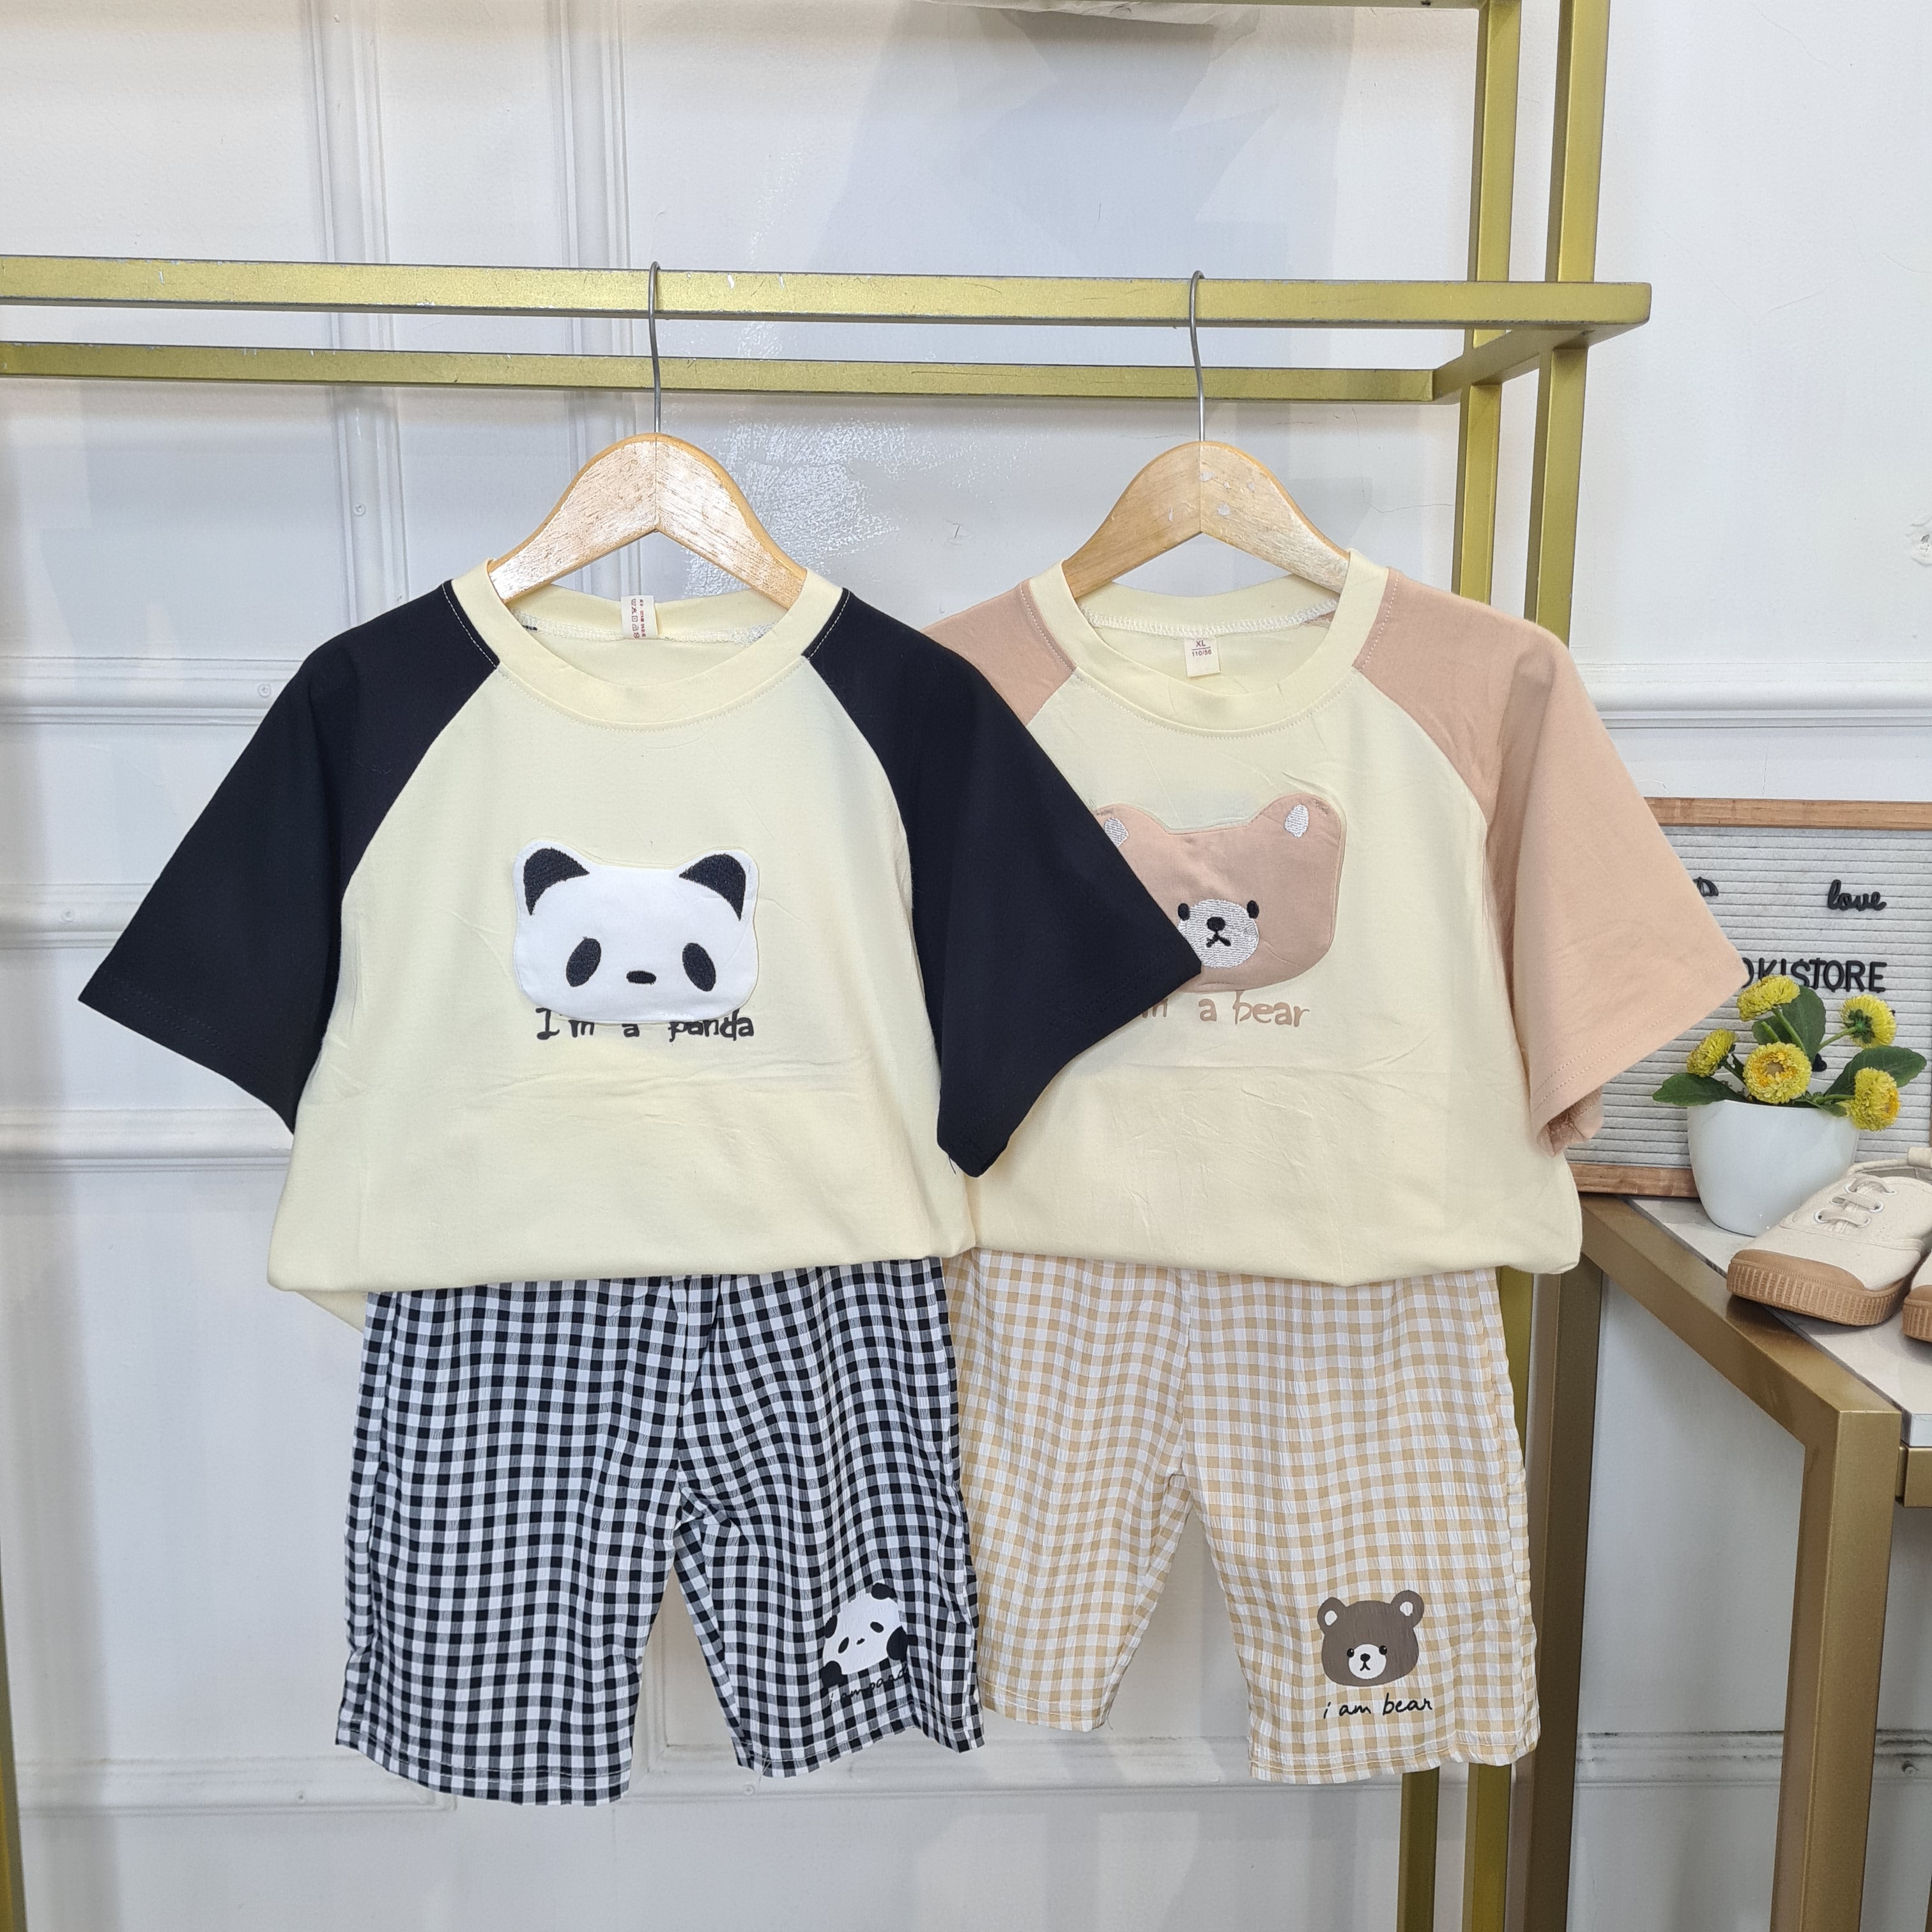 [345476-V1] - Baju Setelan Kaos Celana Kotak-kotak Anak Perempuan Import Fashion - Motif Panda Bear